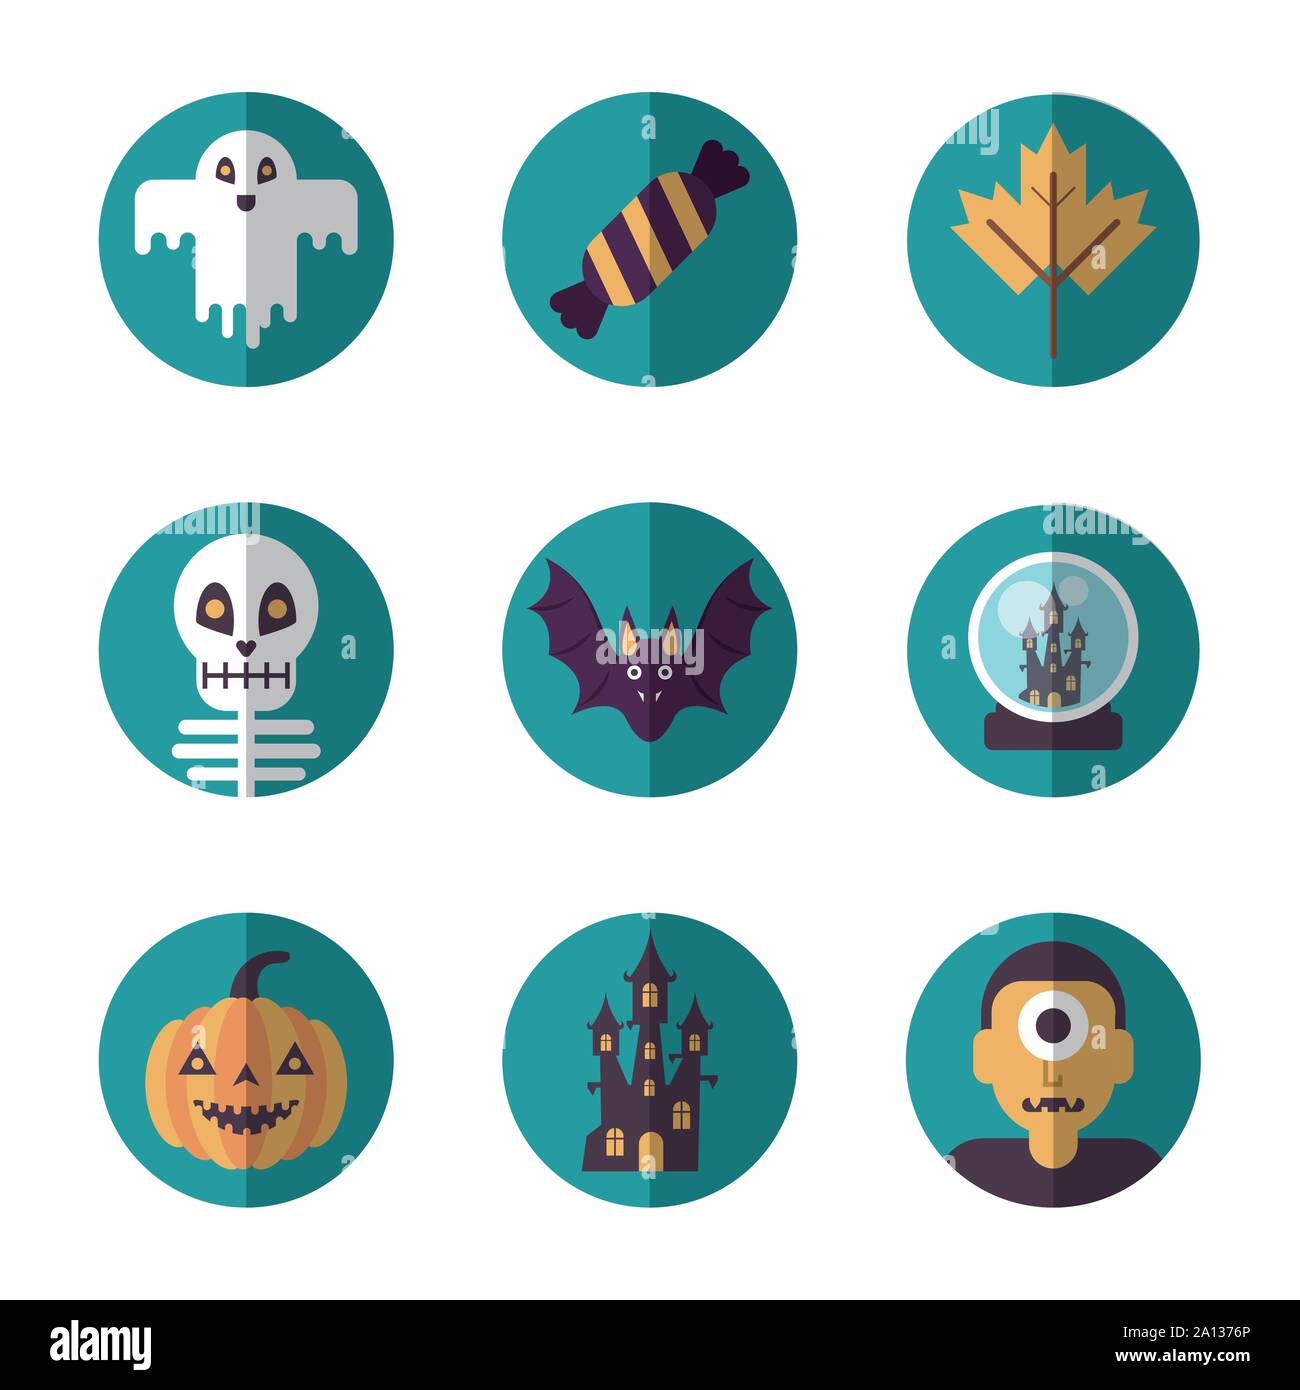 bundle of halloween set icons Stock Vector